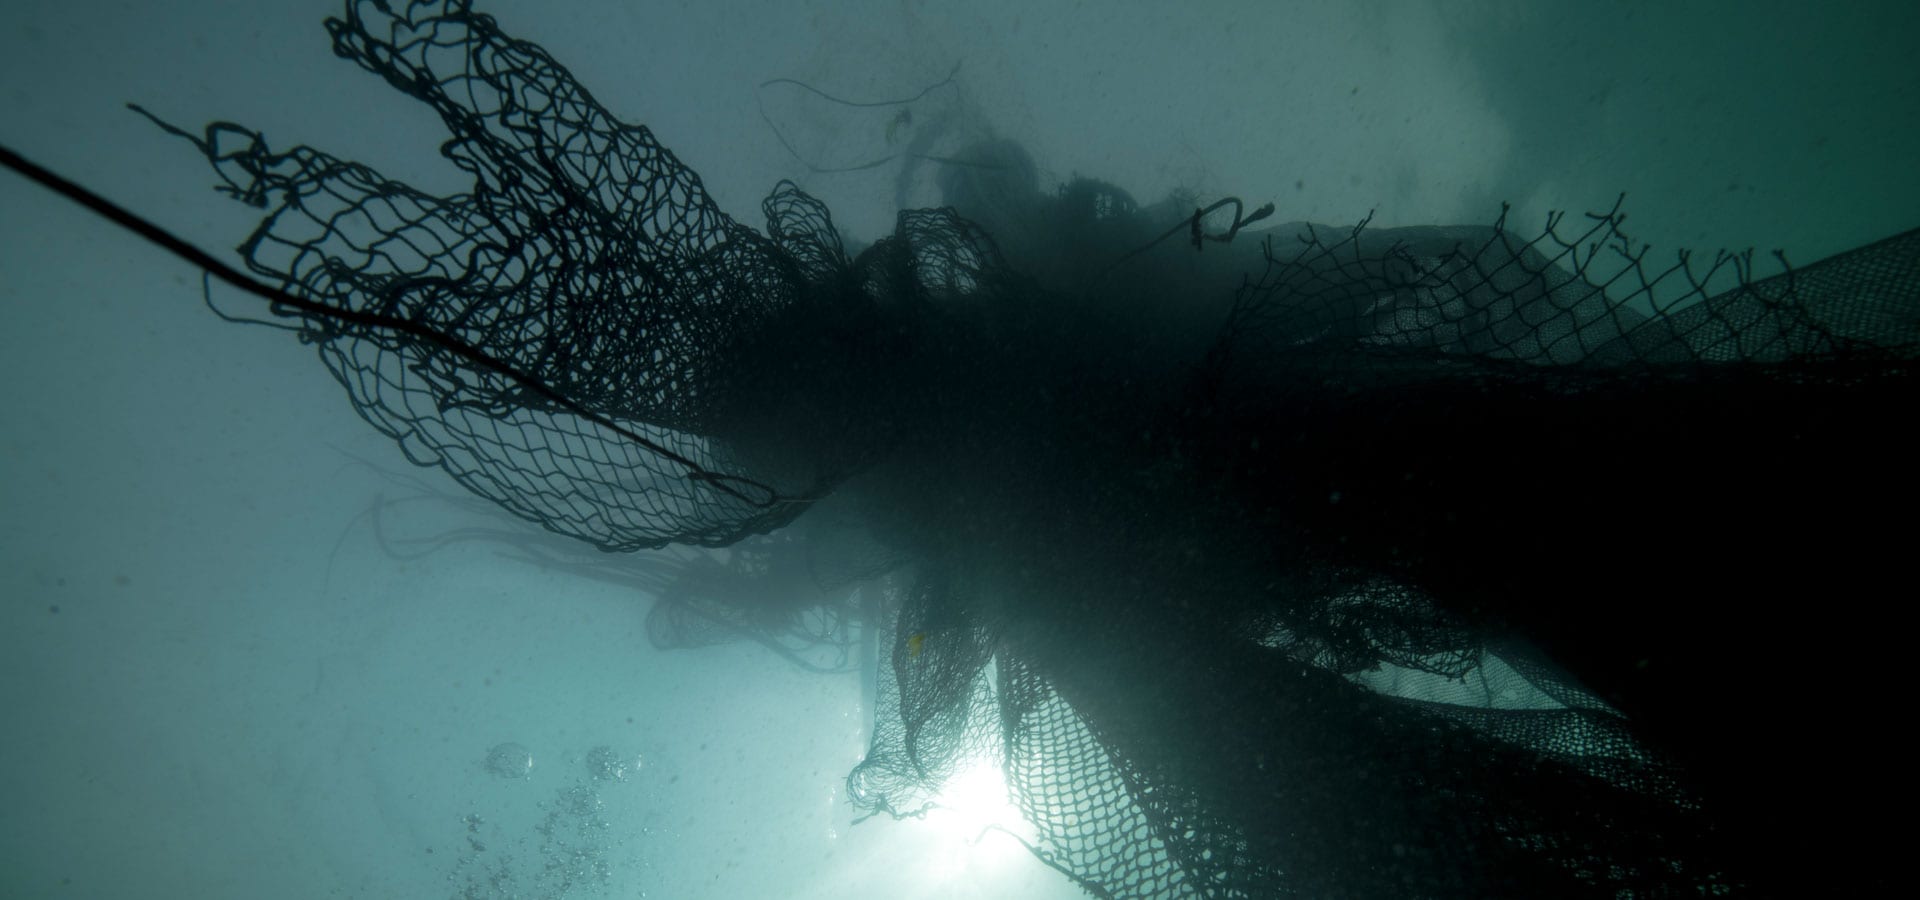 Gafas fabricadas con redes de pesca abandonadas en el mar